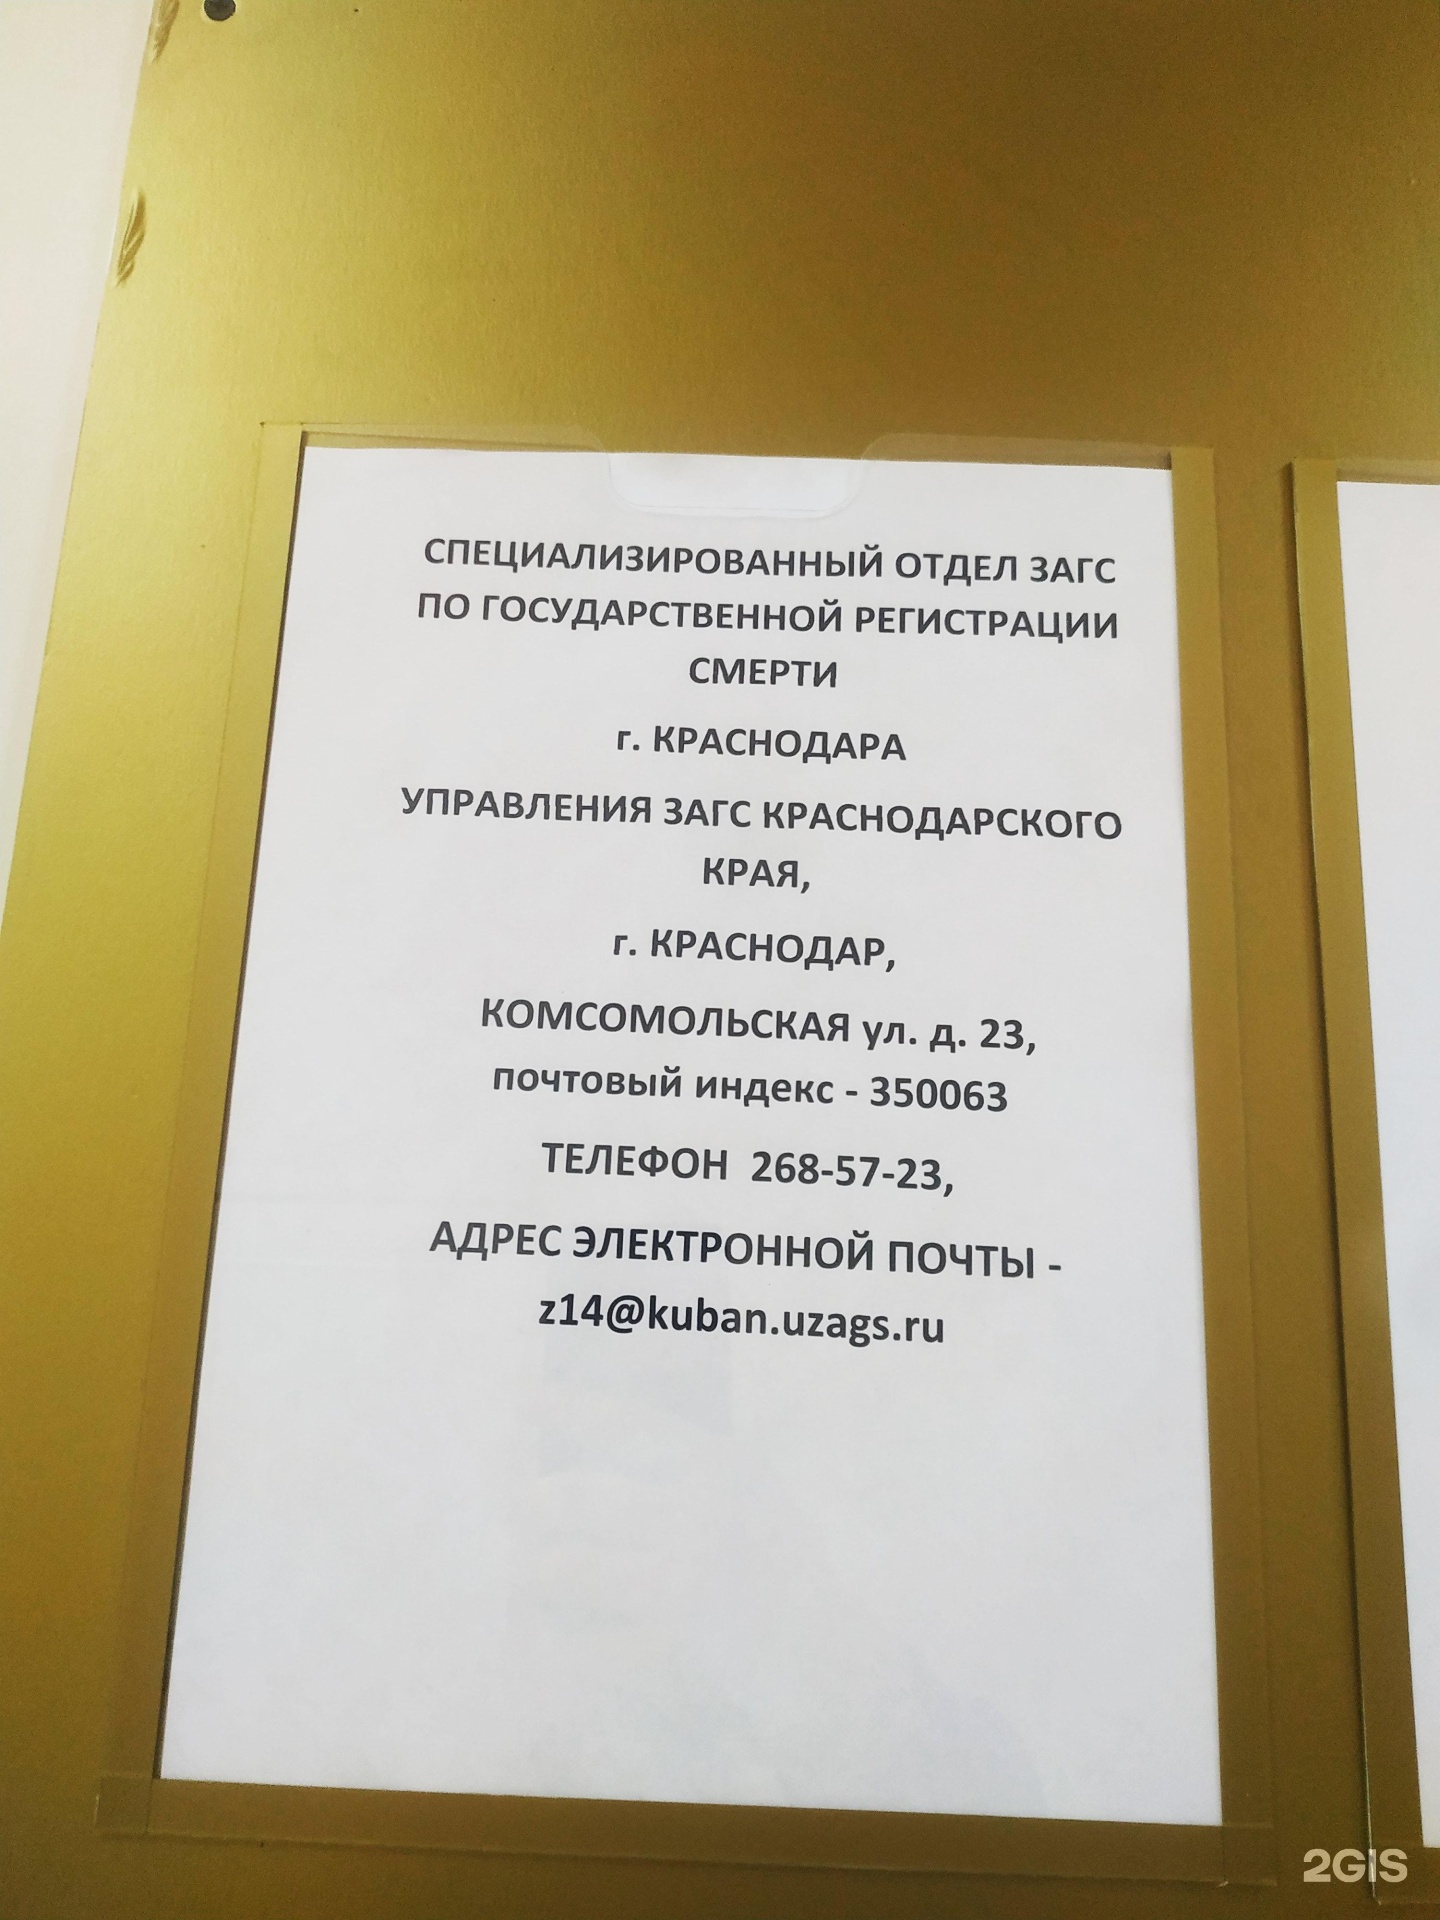 Специализированный отдел ЗАГС. Комсомольский 108а ЗАГС. Отдел регистрации смерти Анапа.